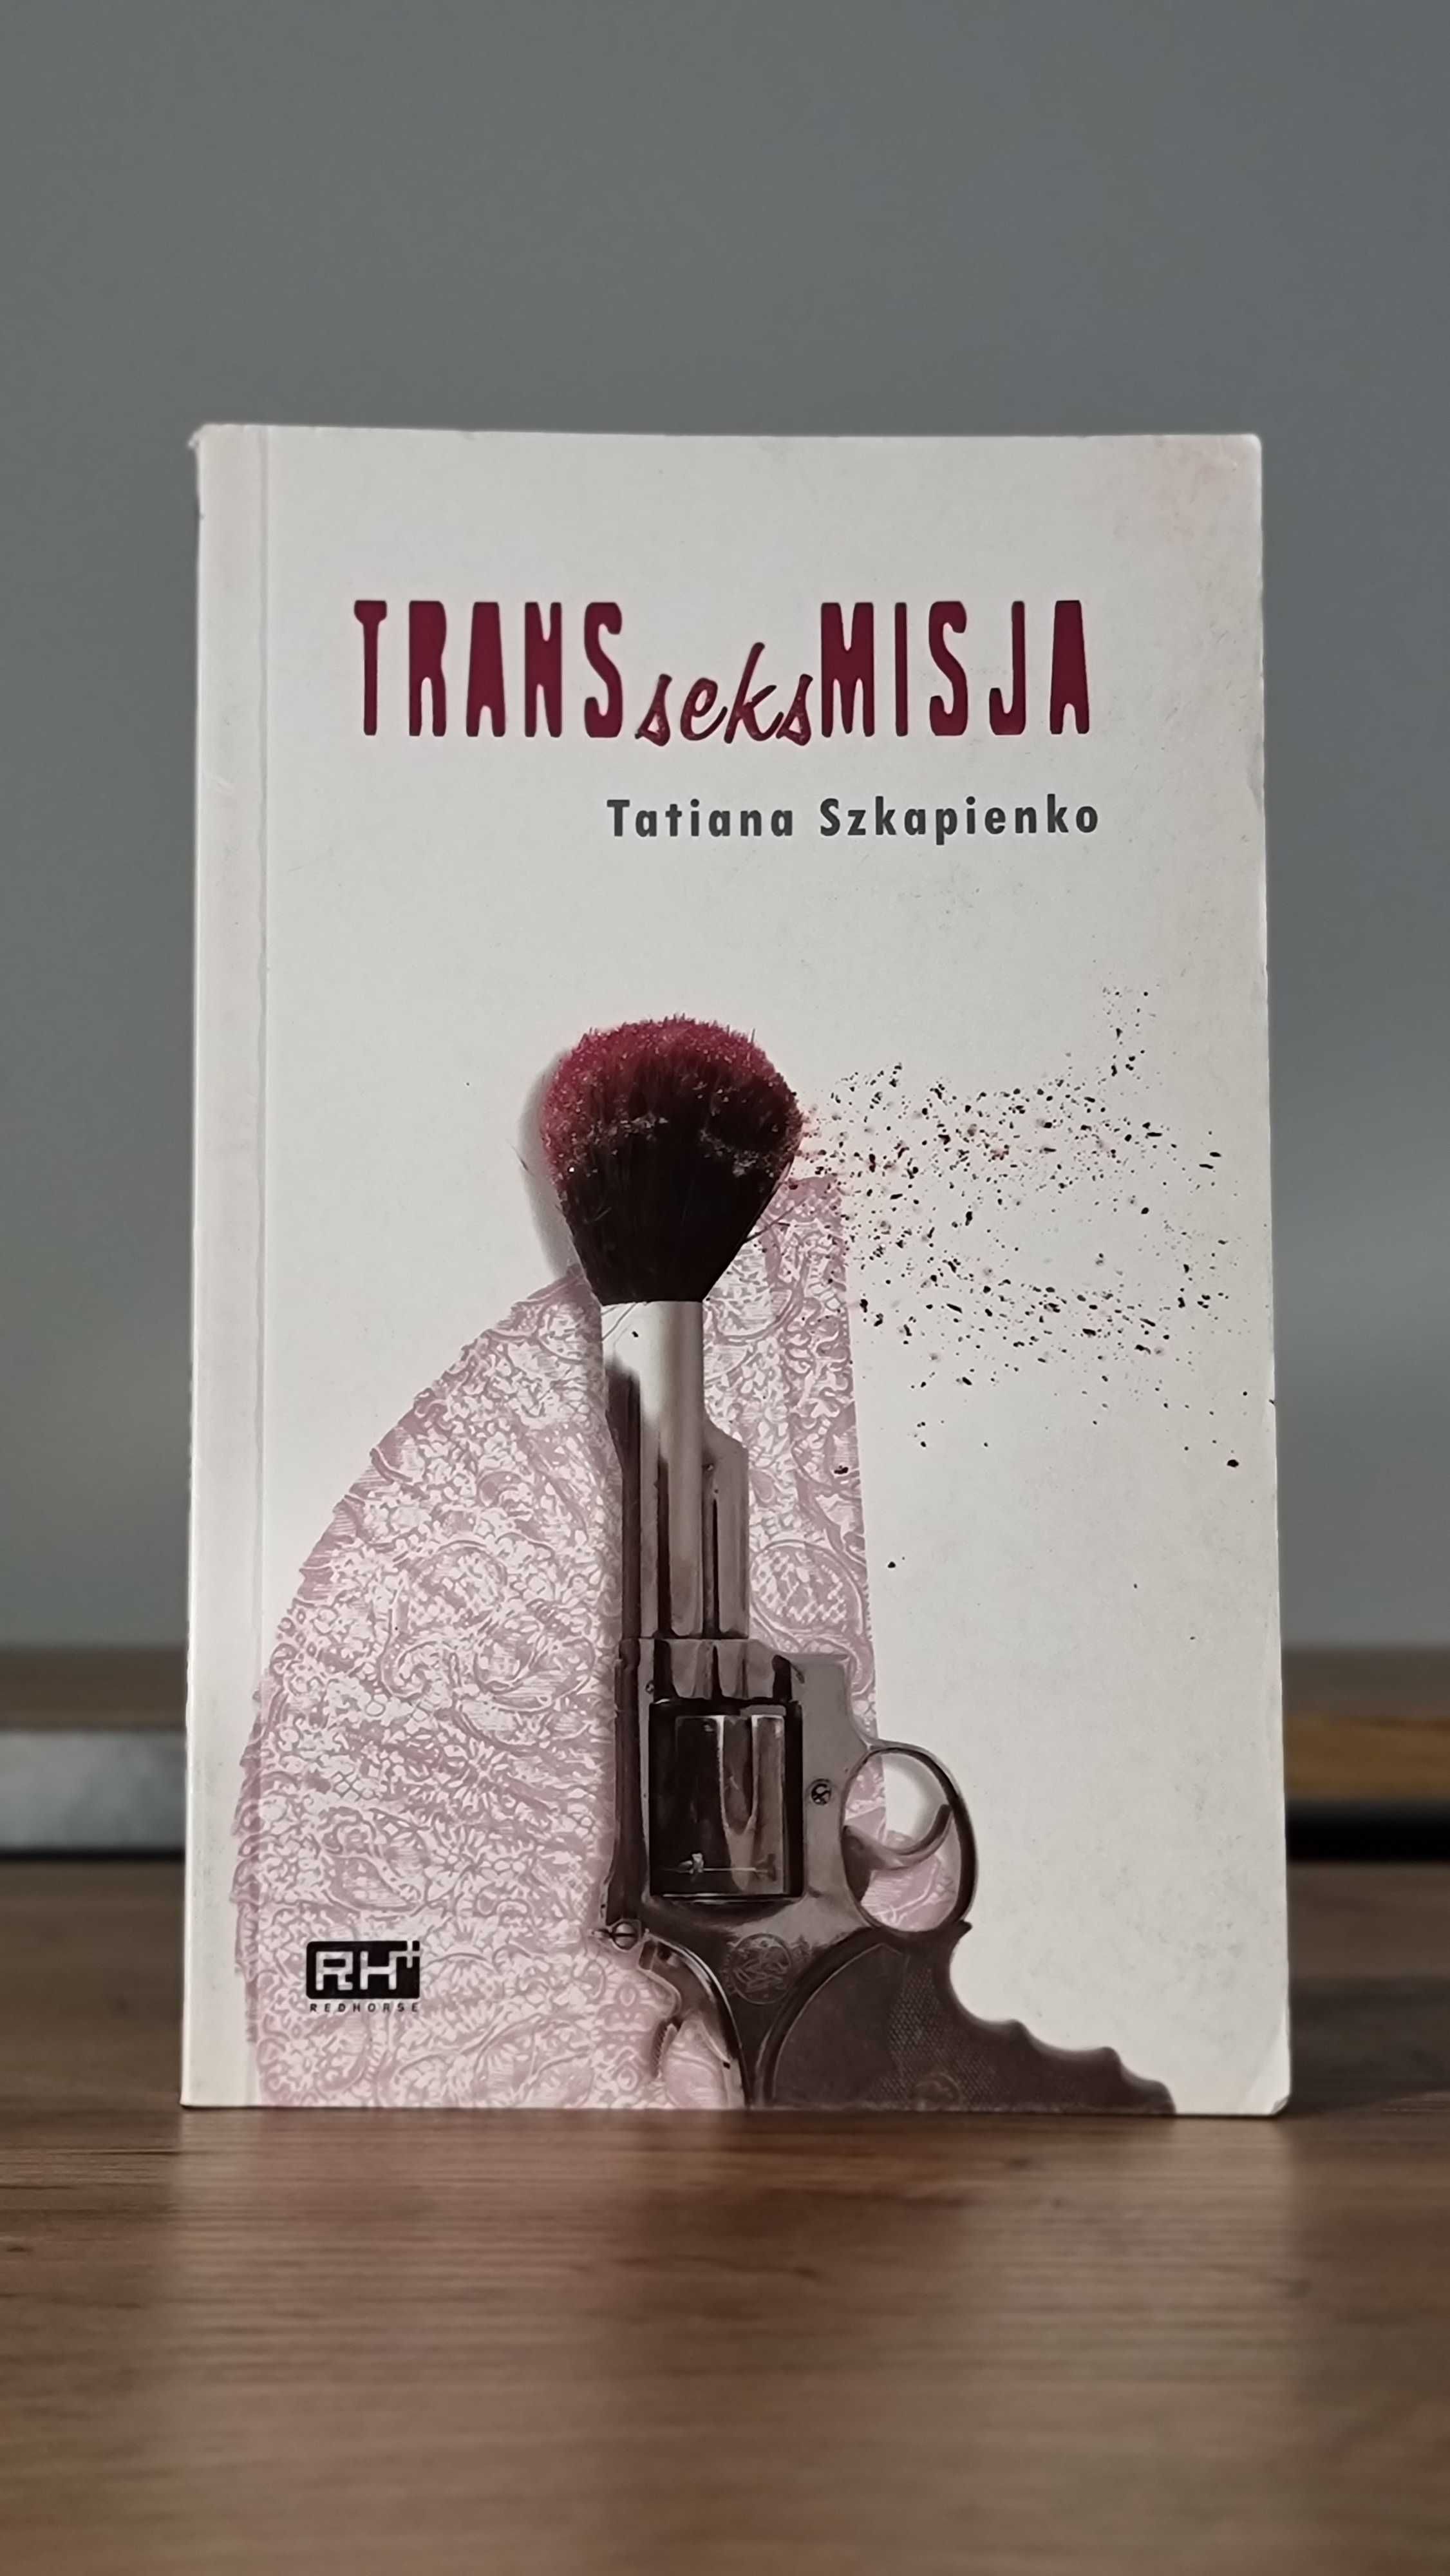 "Transseksmisja" - Tatiana Szkapienko, Wydanie I